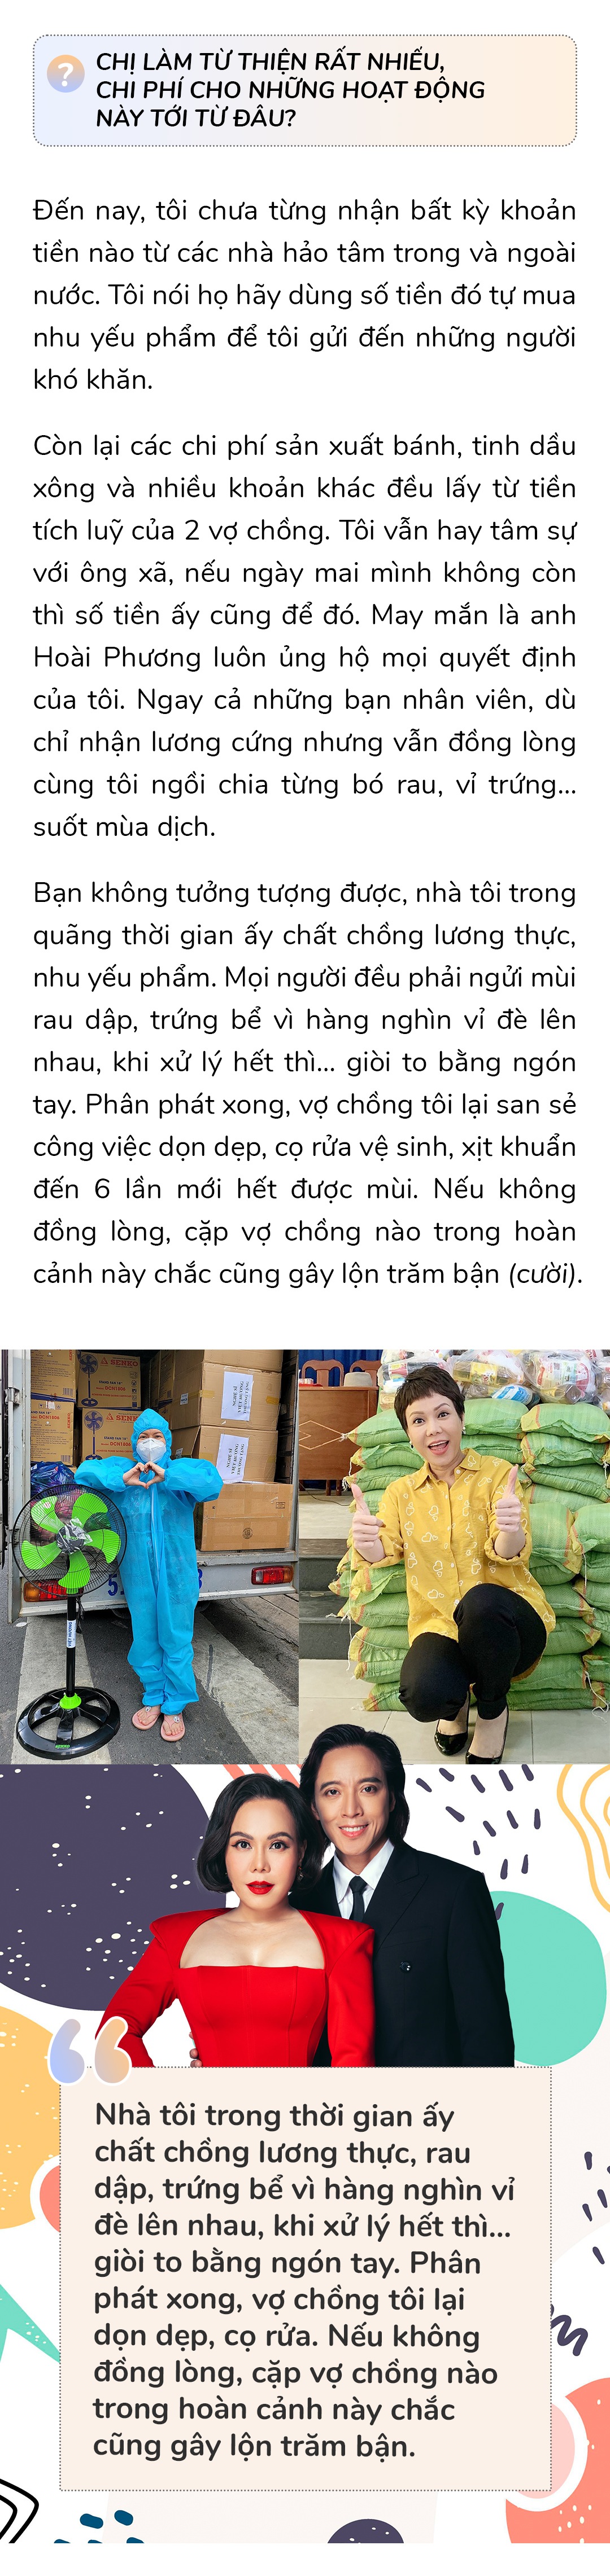 Chồng Việt Hương cảm ơn vợ vì thuyết phục mình về nước, gần 20 năm nói yêu trước khi ngủ - 10